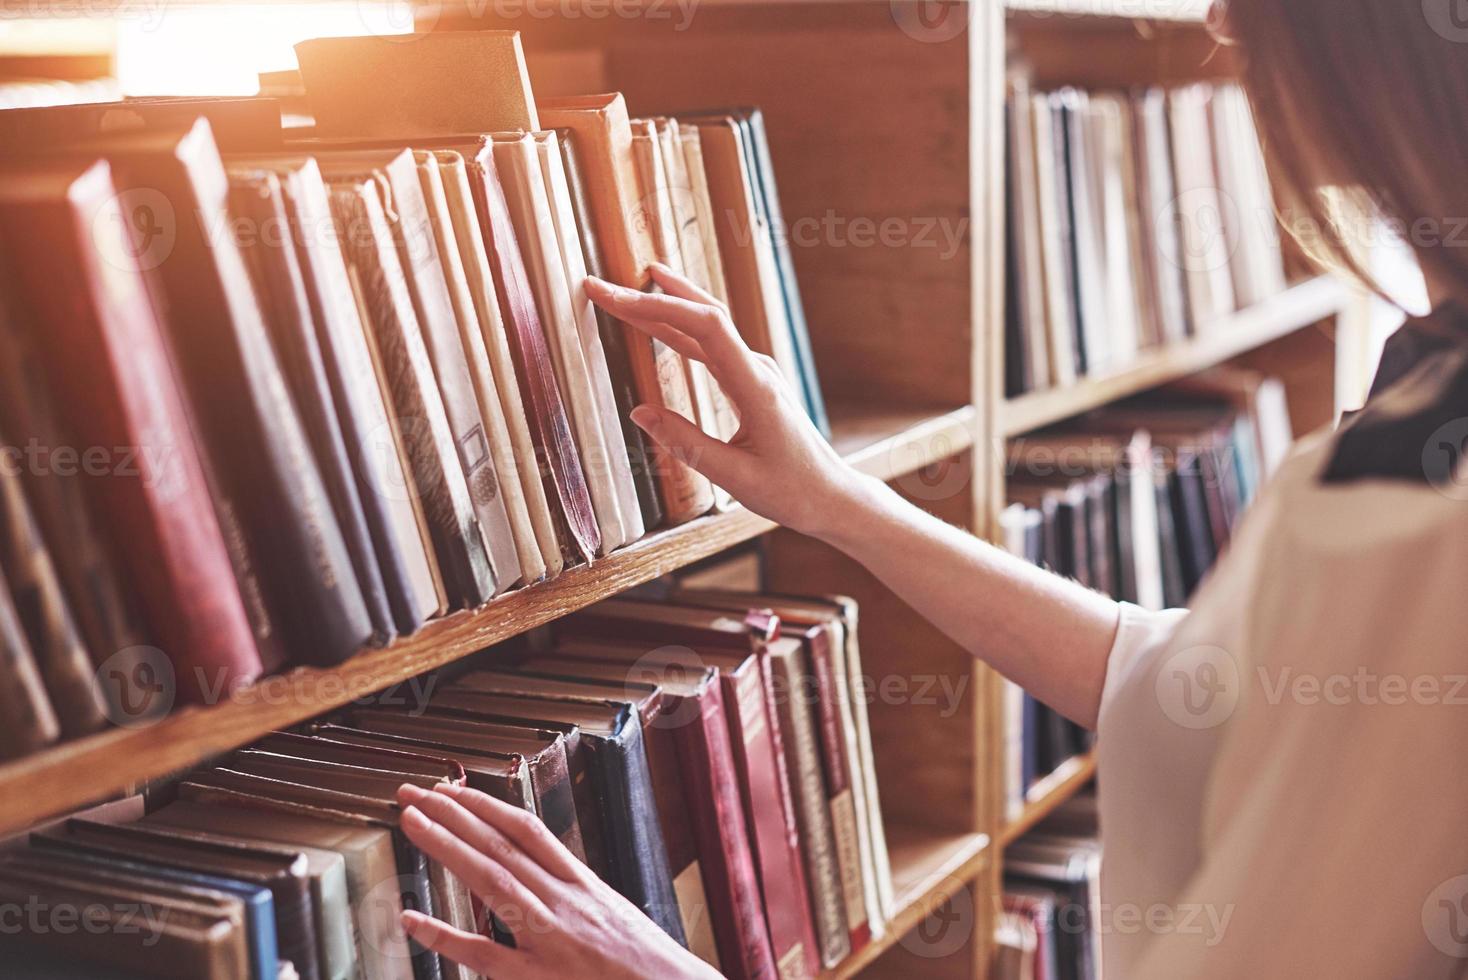 jovem e atraente estudante bibliotecária lendo um livro entre as estantes da biblioteca foto